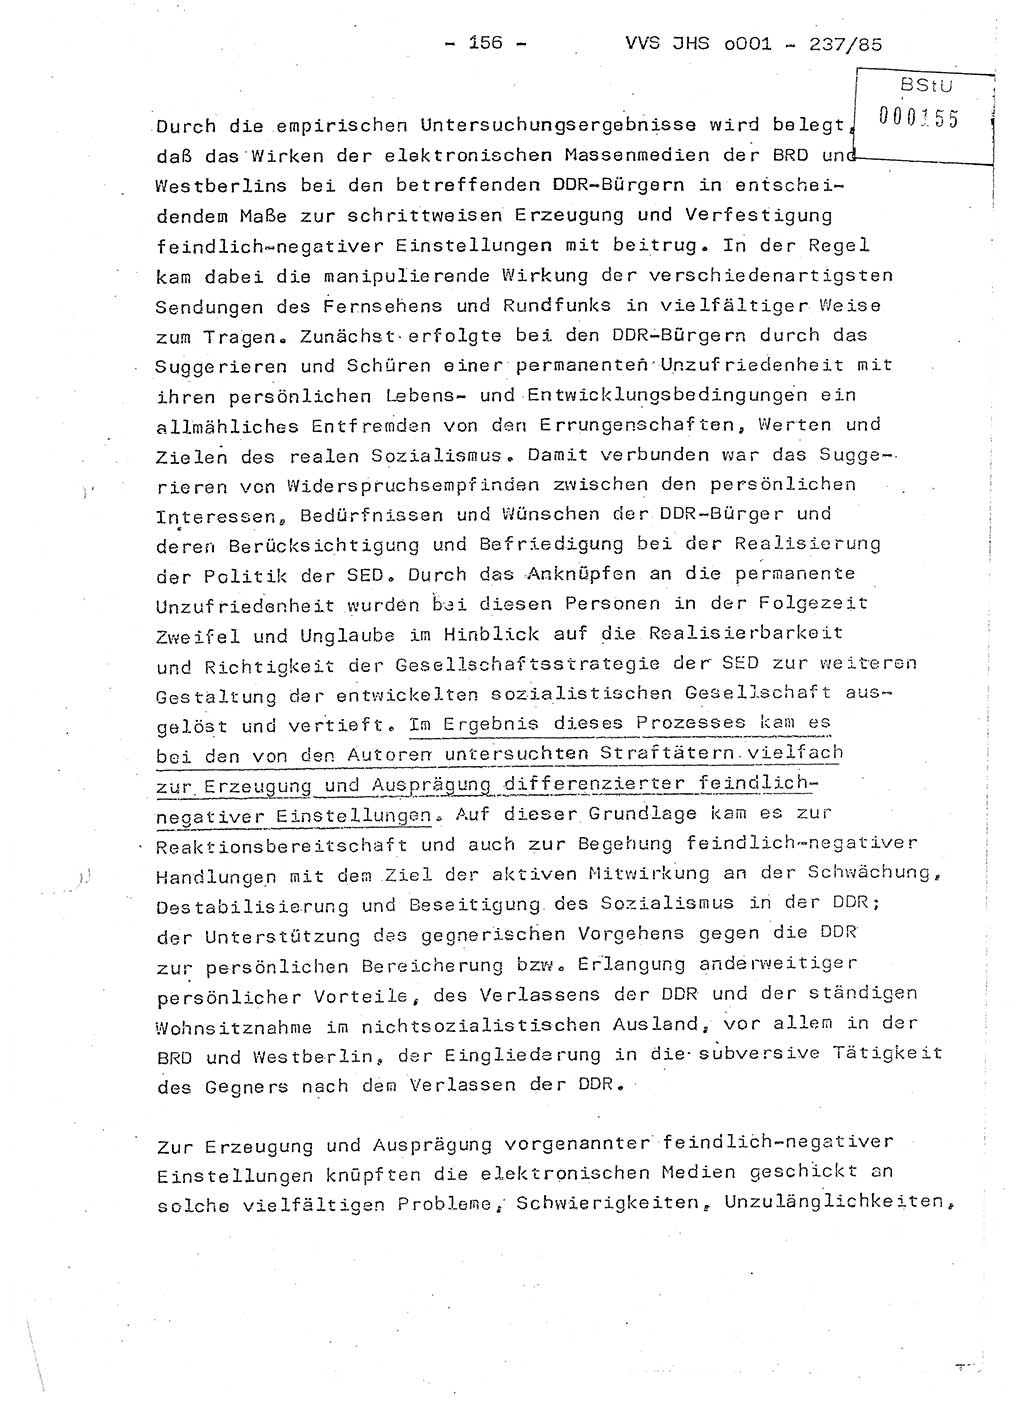 Dissertation Oberstleutnant Peter Jakulski (JHS), Oberstleutnat Christian Rudolph (HA Ⅸ), Major Horst Böttger (ZMD), Major Wolfgang Grüneberg (JHS), Major Albert Meutsch (JHS), Ministerium für Staatssicherheit (MfS) [Deutsche Demokratische Republik (DDR)], Juristische Hochschule (JHS), Vertrauliche Verschlußsache (VVS) o001-237/85, Potsdam 1985, Seite 156 (Diss. MfS DDR JHS VVS o001-237/85 1985, S. 156)